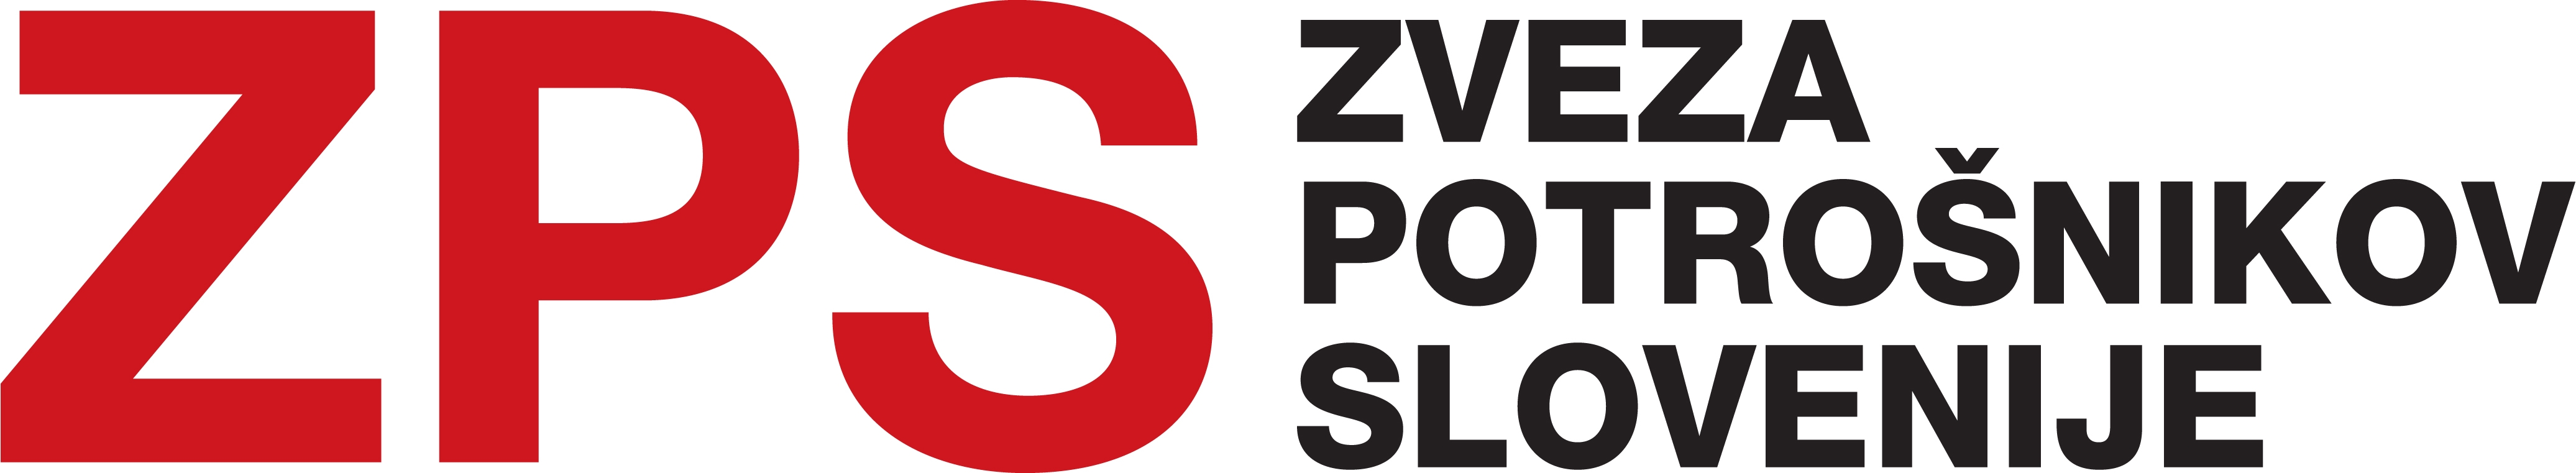 logo Zveza potrošnikov Slovenije